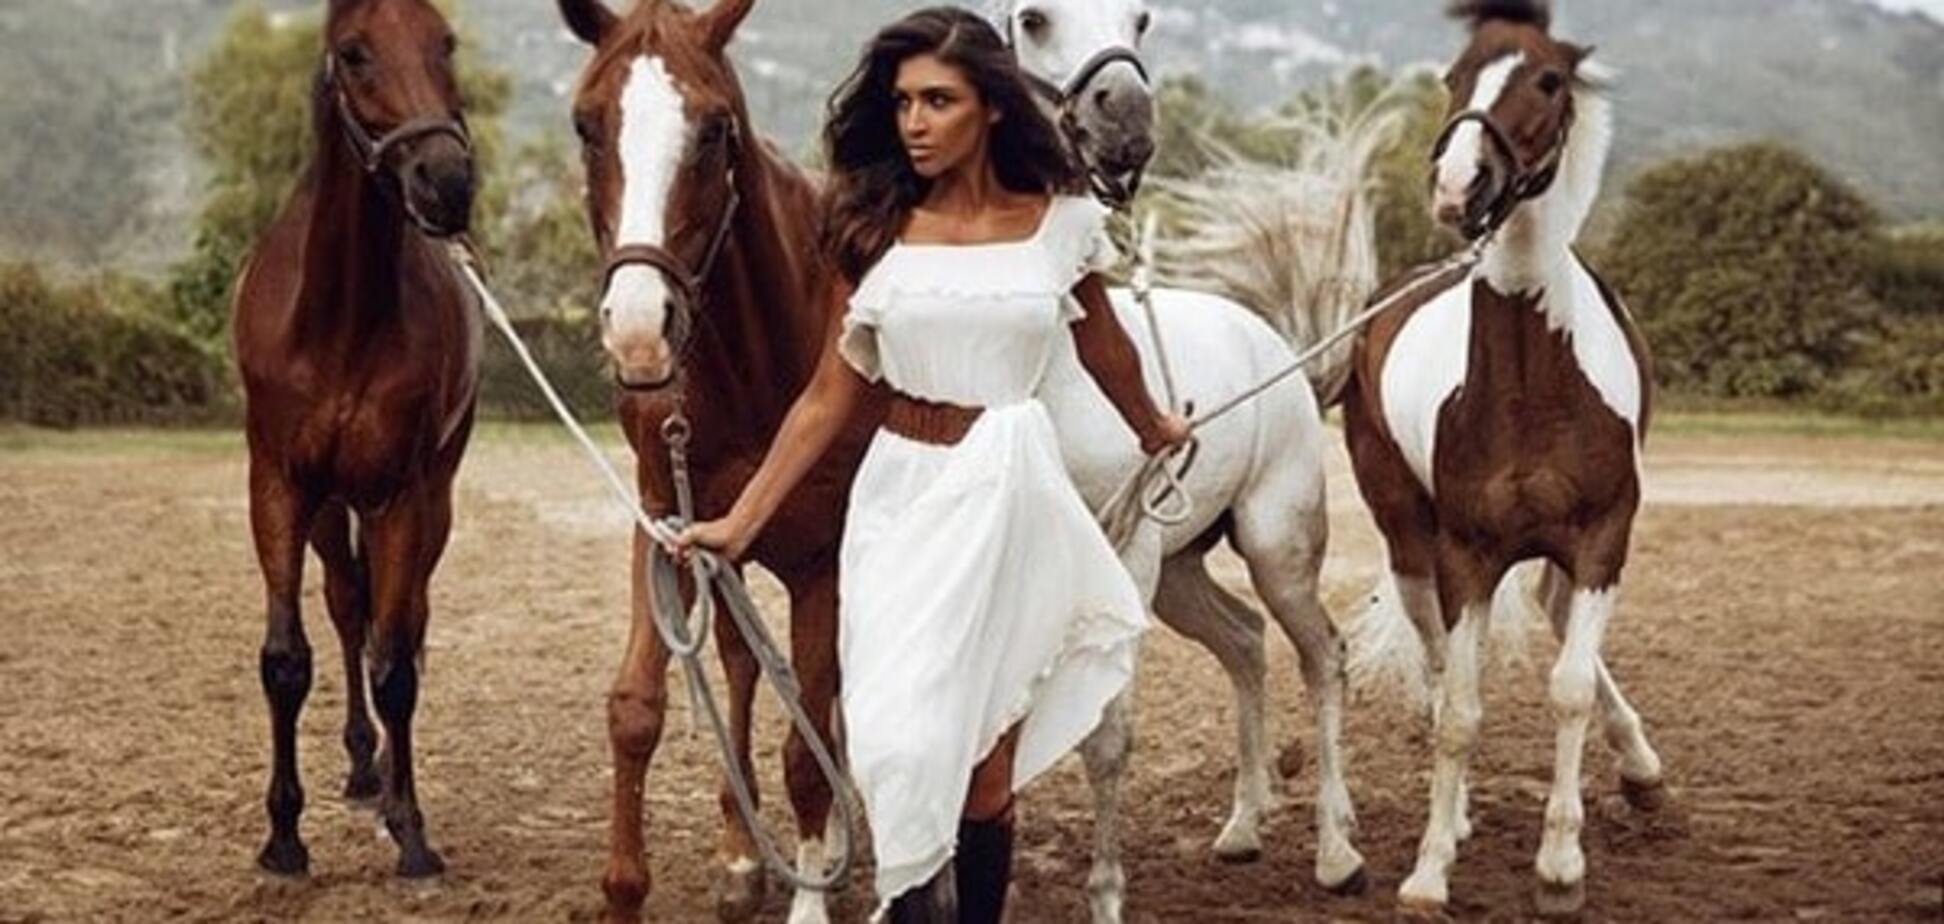 Санта Дімопулос у розкішному вбранні знялася в яскравій фотосесії з конями